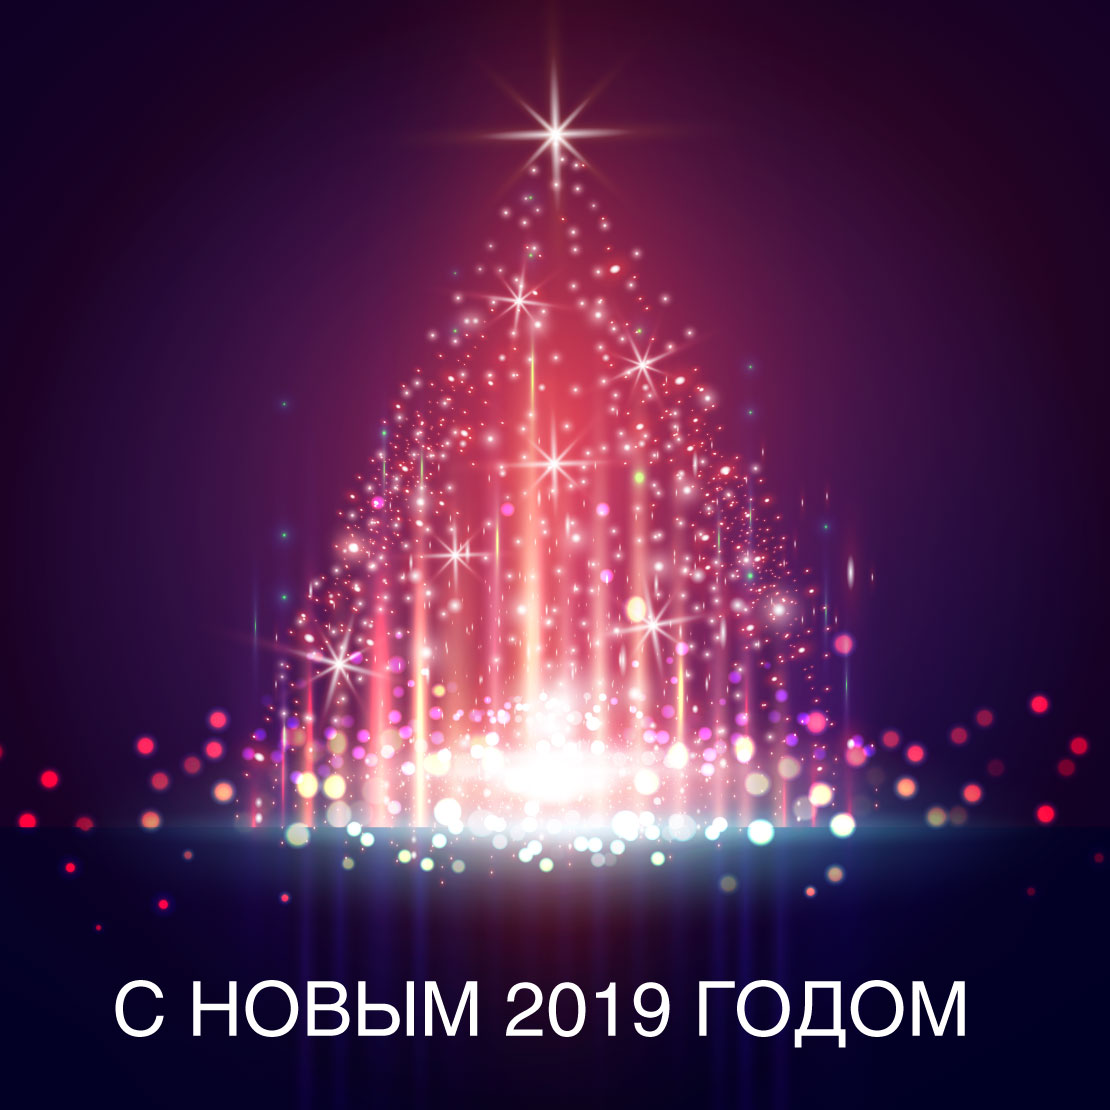 Поздравляем с новым 2019 годом. Желаем счастливого нового года и рождества